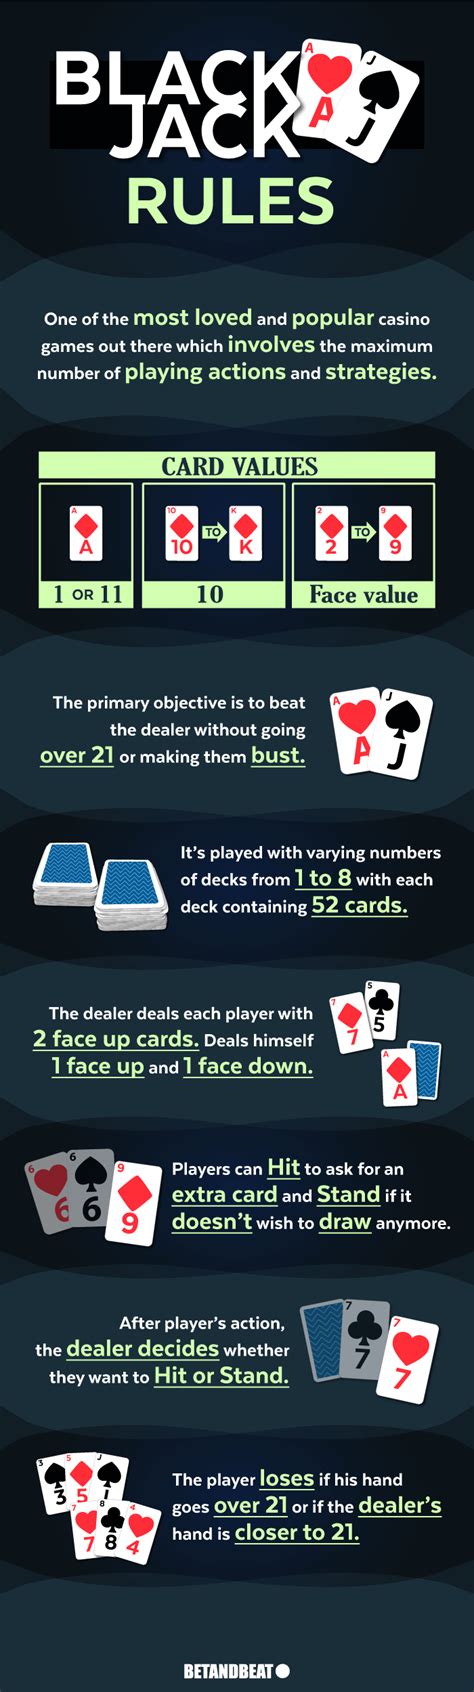 dealer casino blackjack rules ygnz